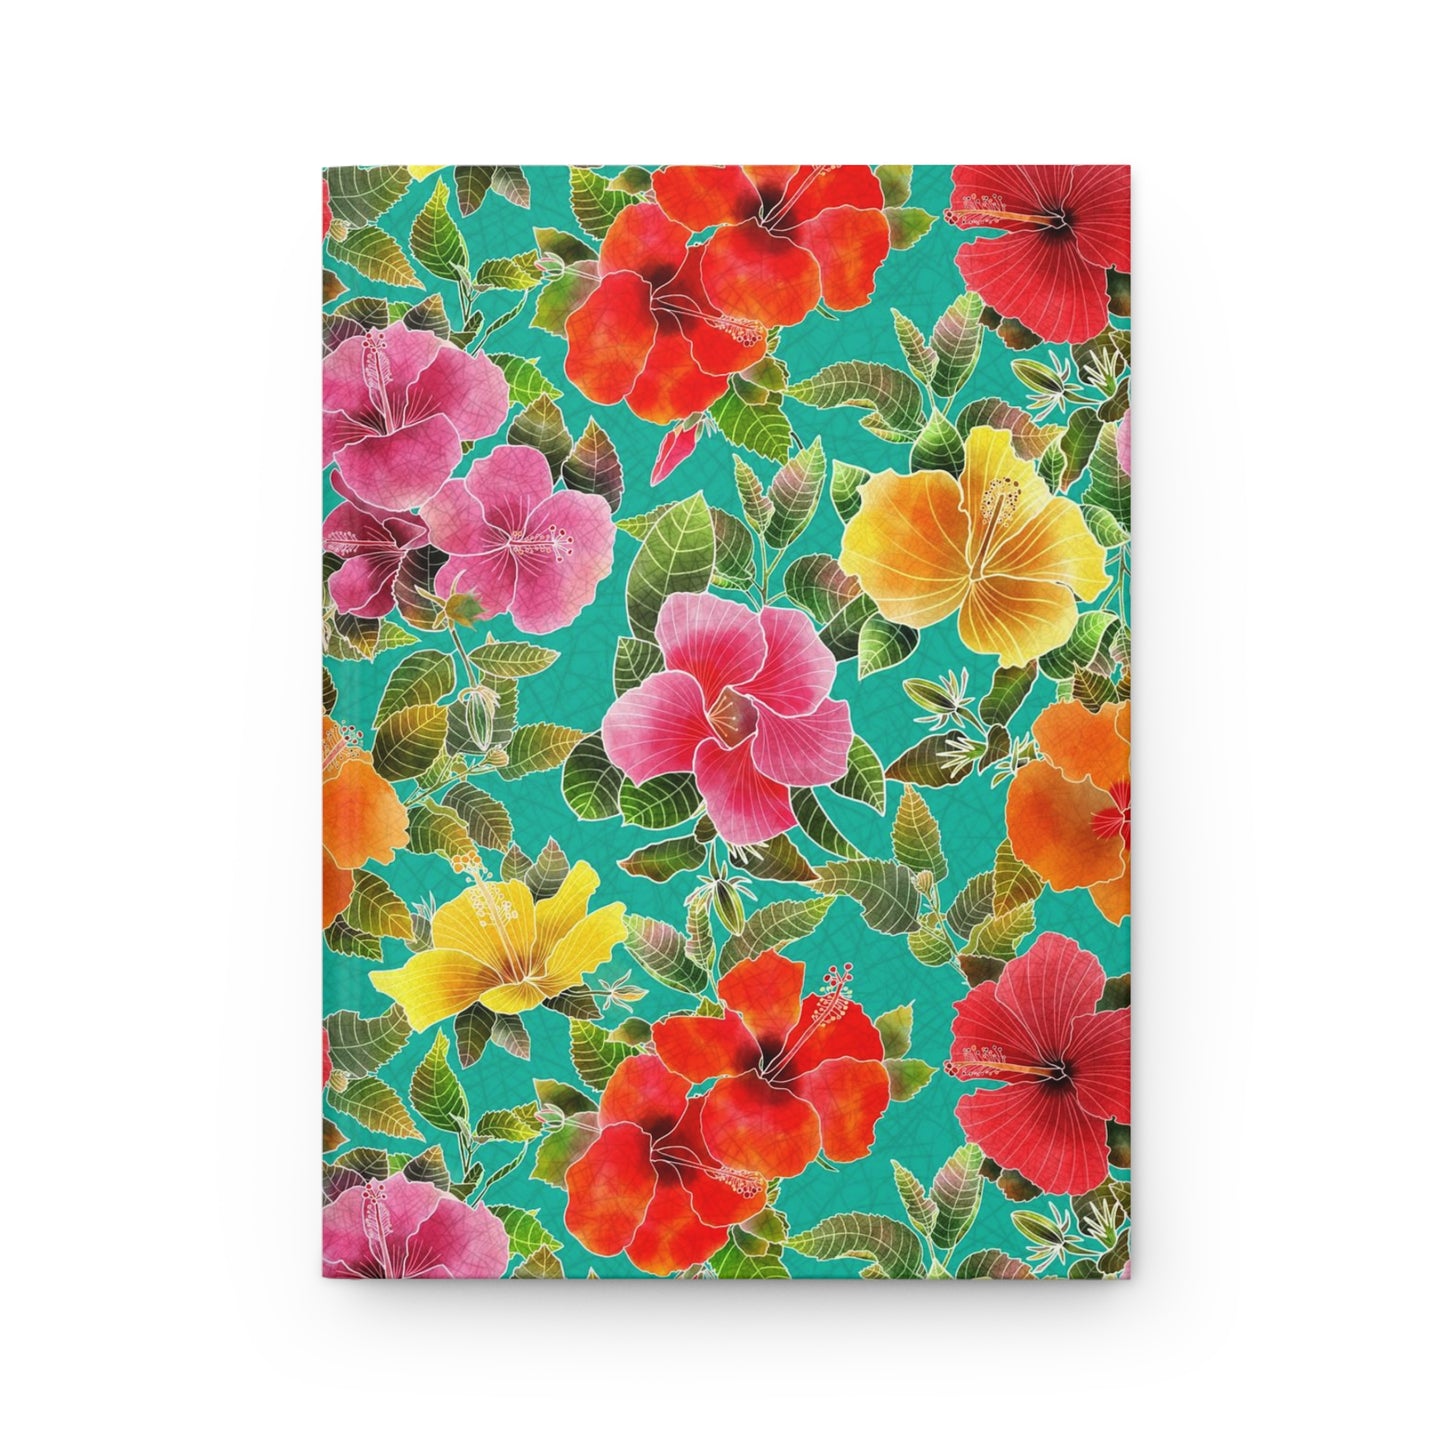 Hibiscus Garden Hardcover Journal Matte